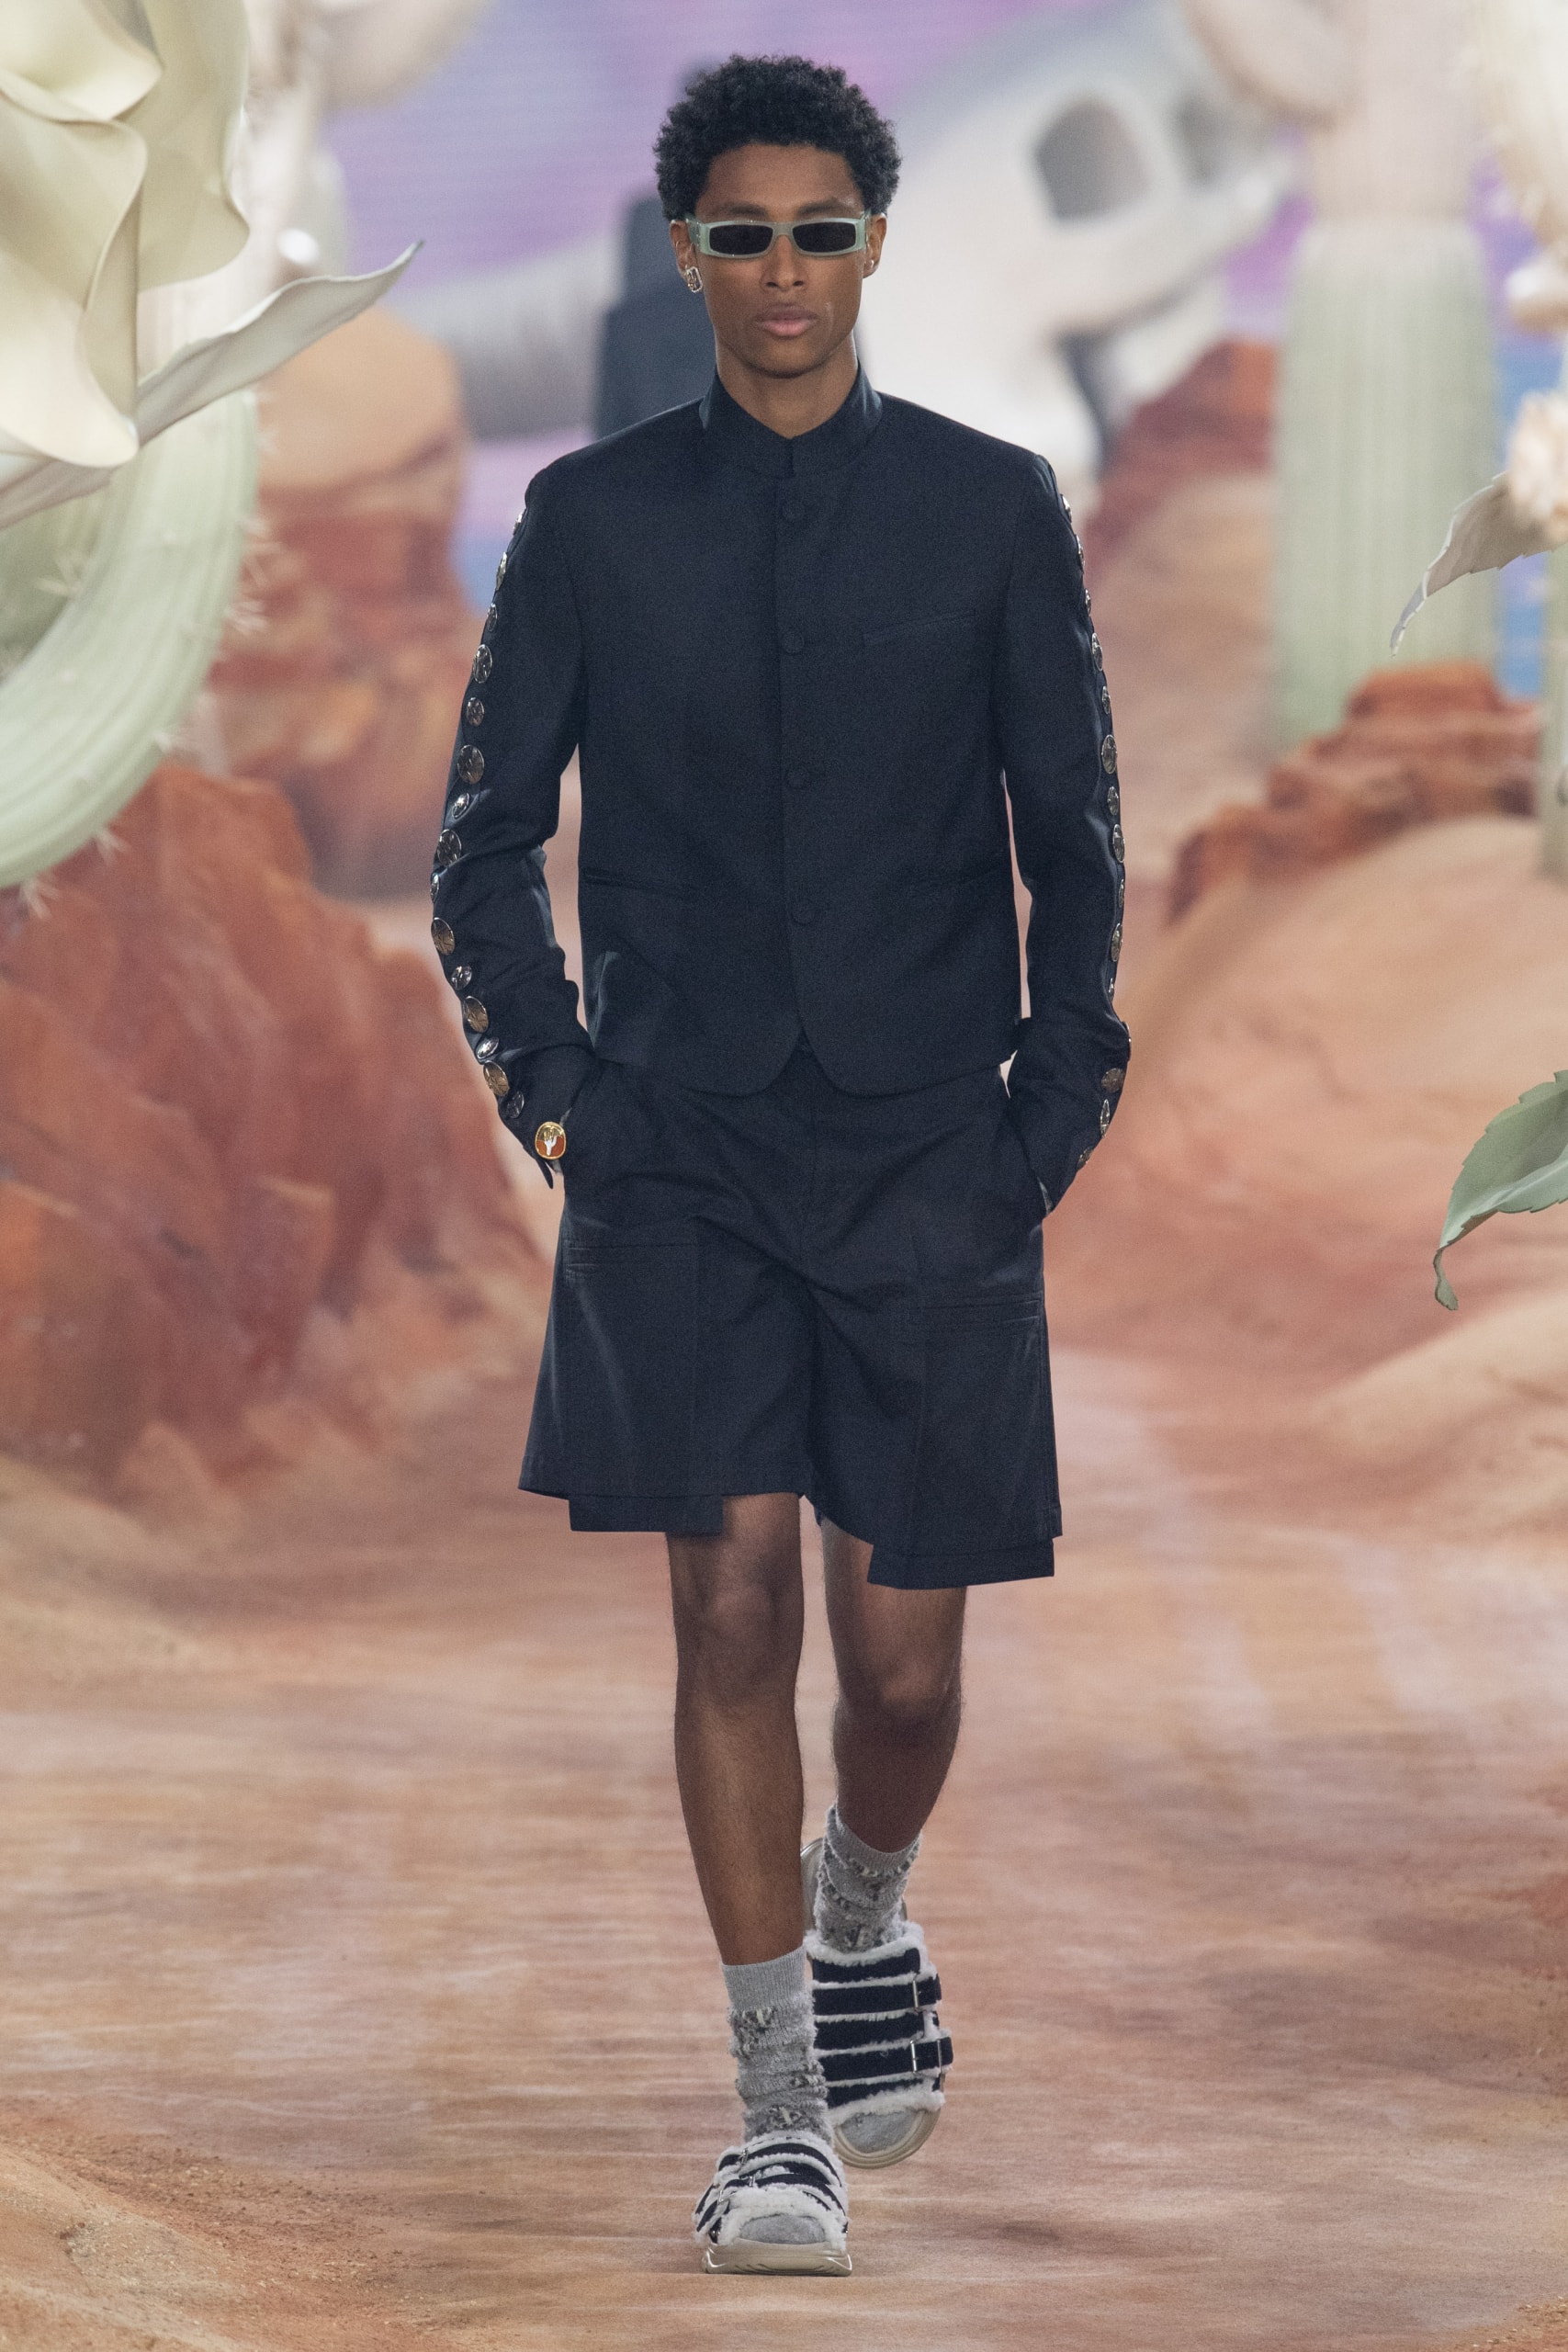 cactus jack travis scott dior men's summer 2022 kim jones paris fashion week details information first look